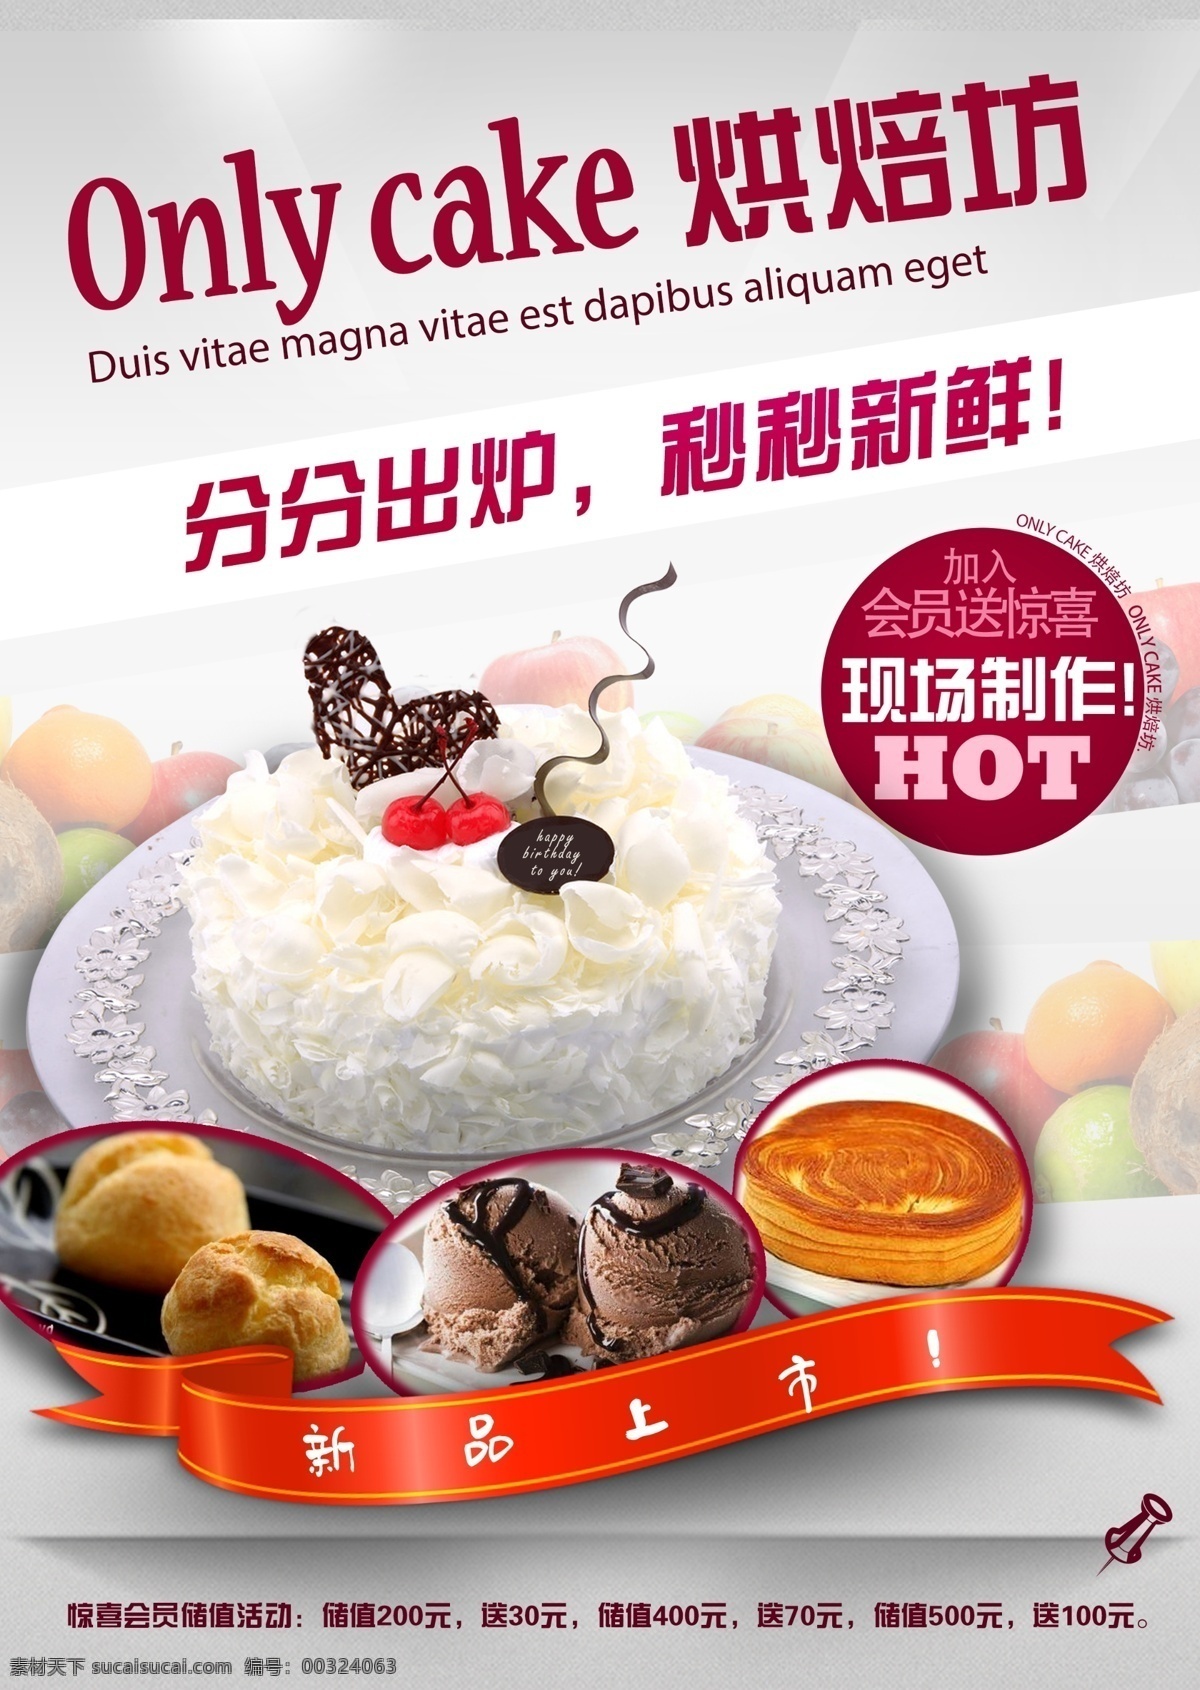 烘焙 坊 蛋糕 海报 烘焙坊蛋糕 海报免费下载 蛋糕店 烘焙坊